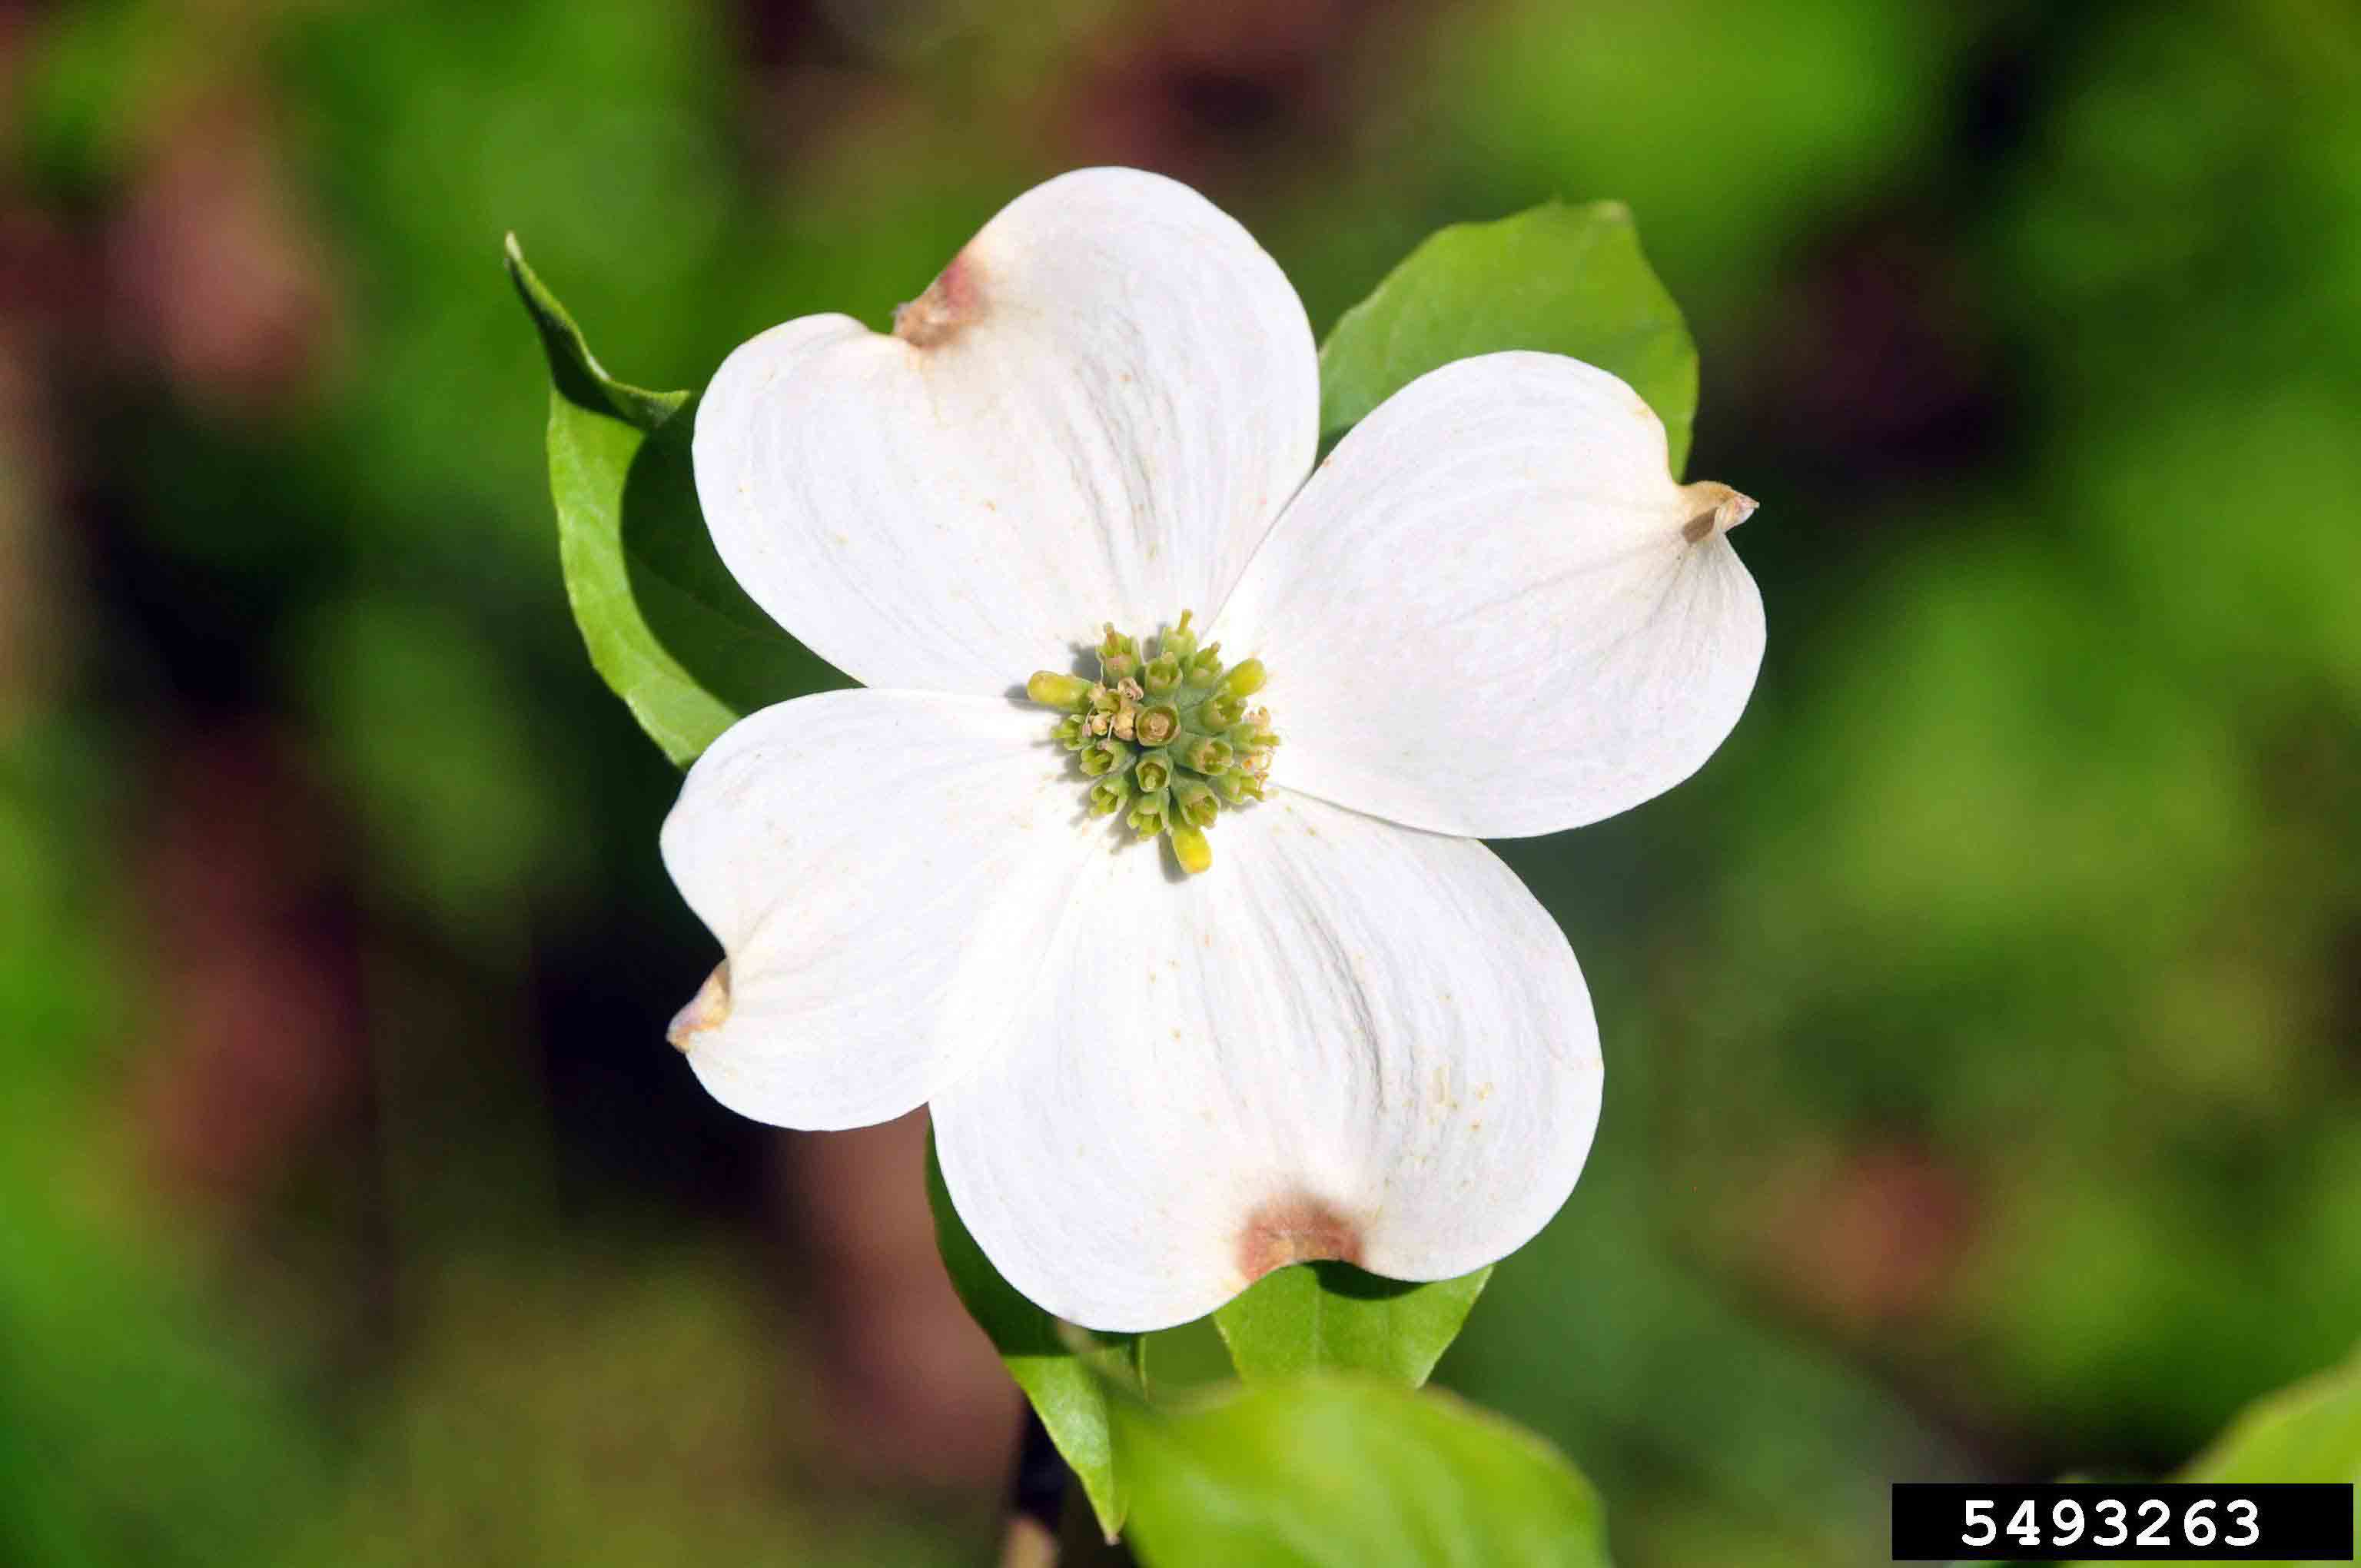 Flowering dogwood flower